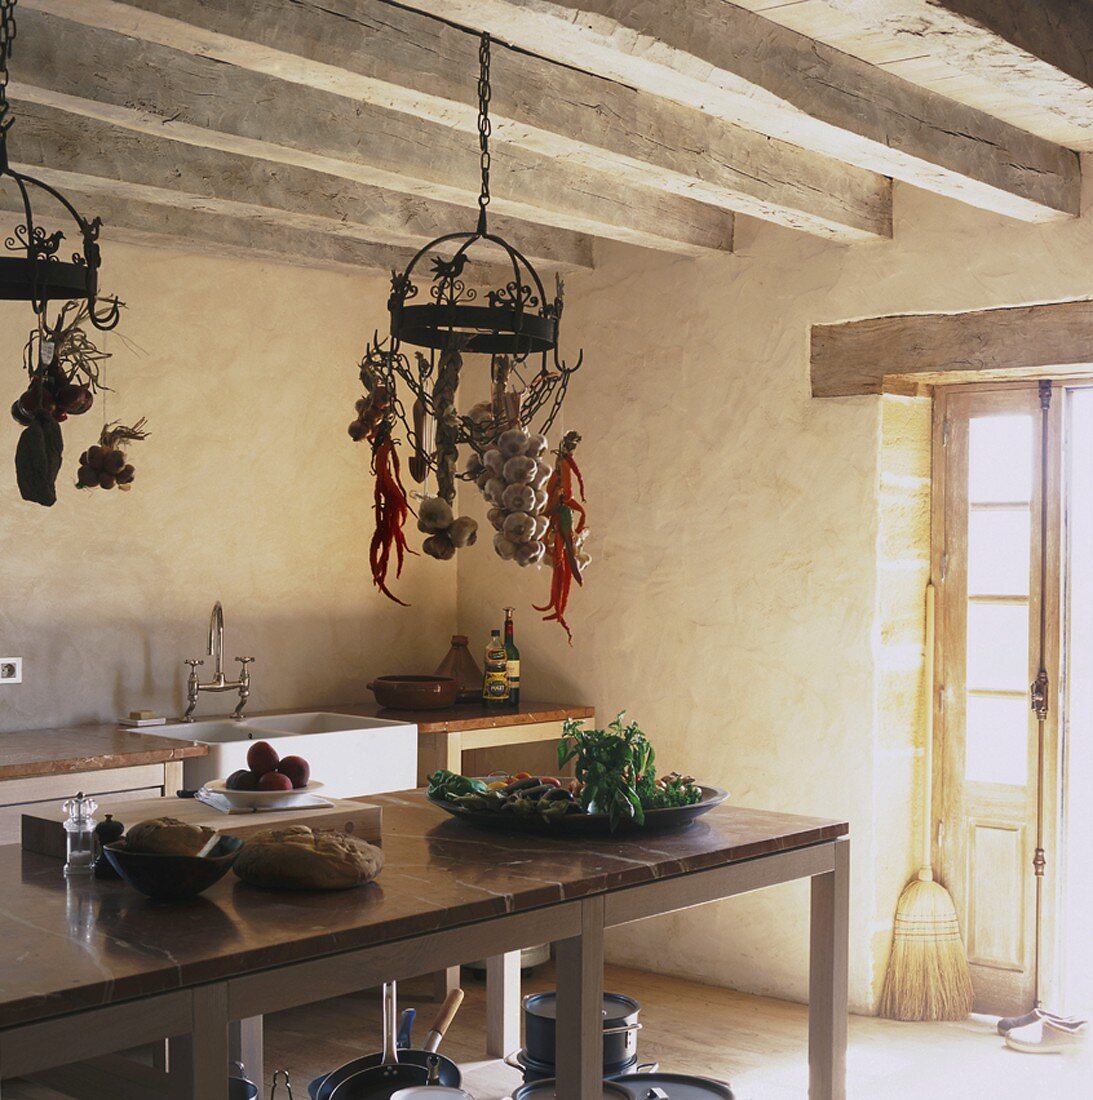 Einfache Kücheneinrichtung und hängende Hakenaufbewahrung in einem urigen Bauernhaus